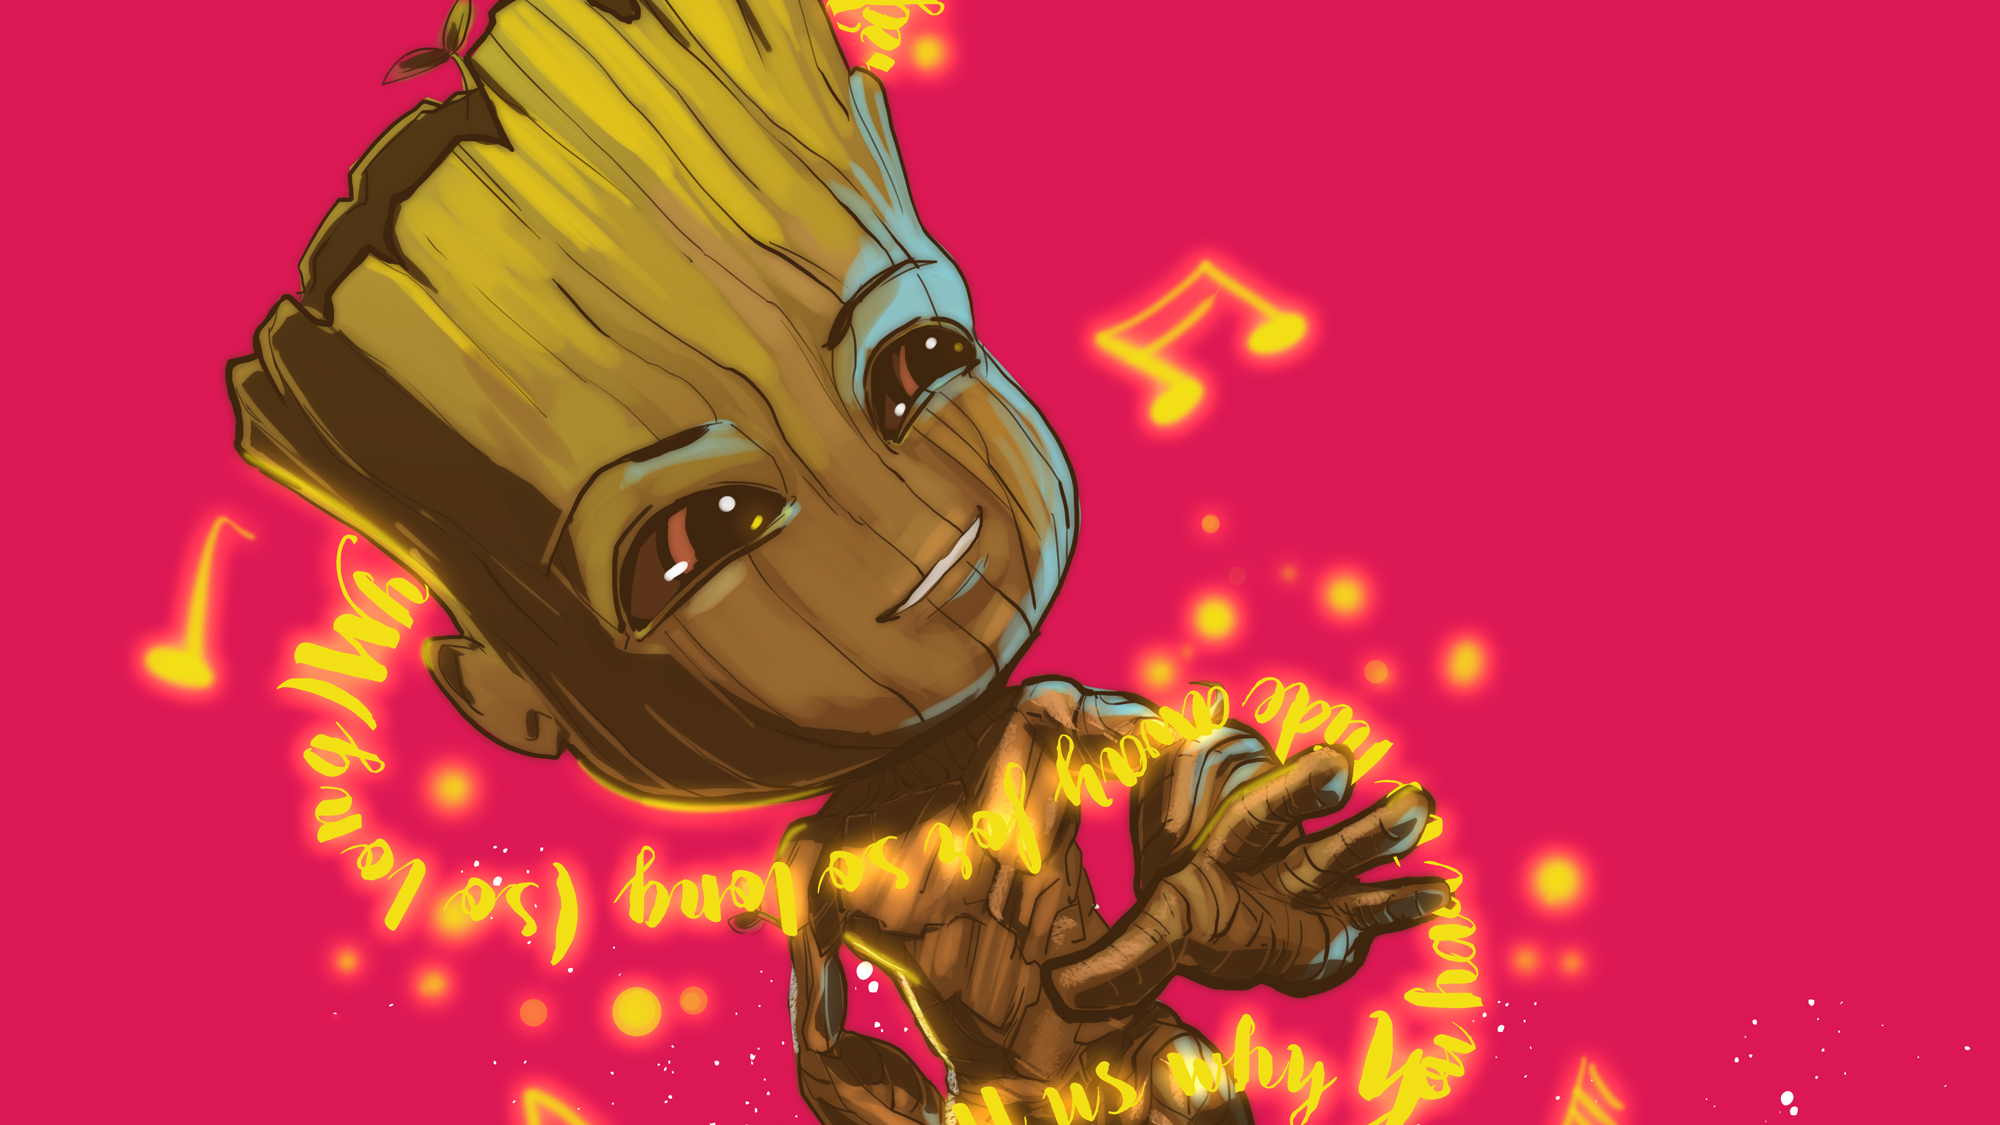 Baby Groot Dancing, HD Superheroes, 4k Wallpapers, Images ...